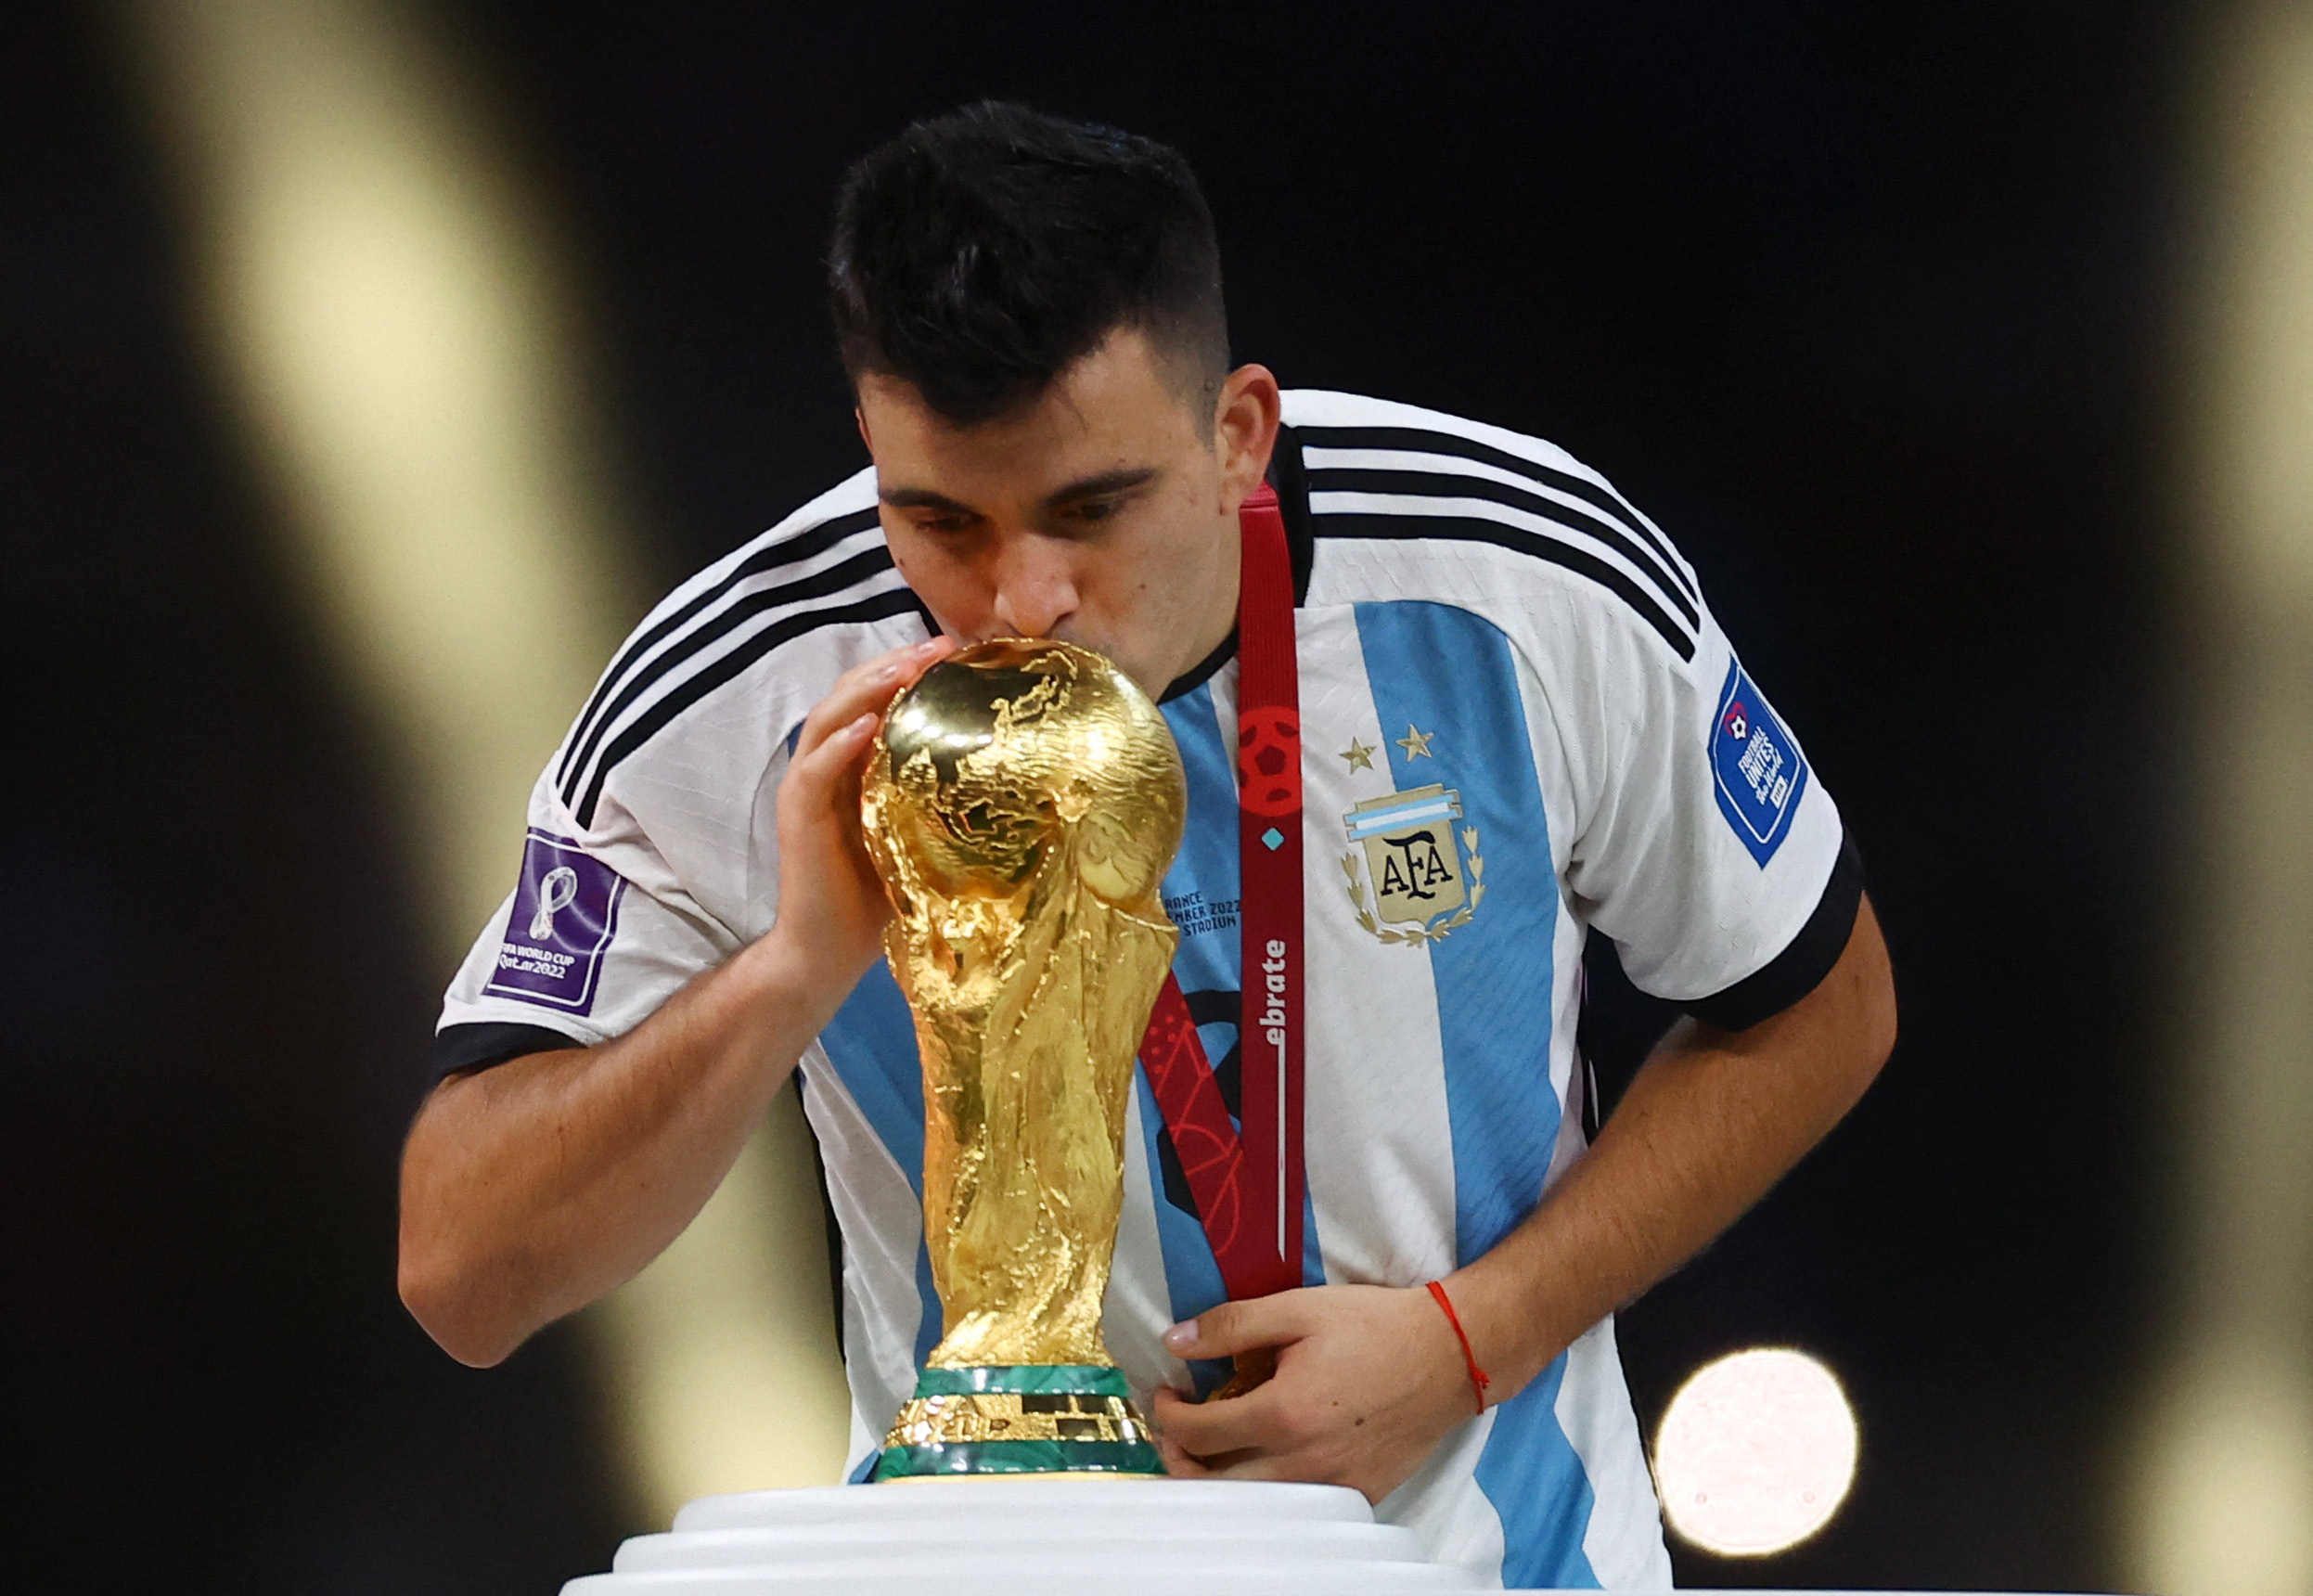 Un campeón del mundo con Argentina cuyo pase se frustró: "El afectado fui yo" | Canal Showsport